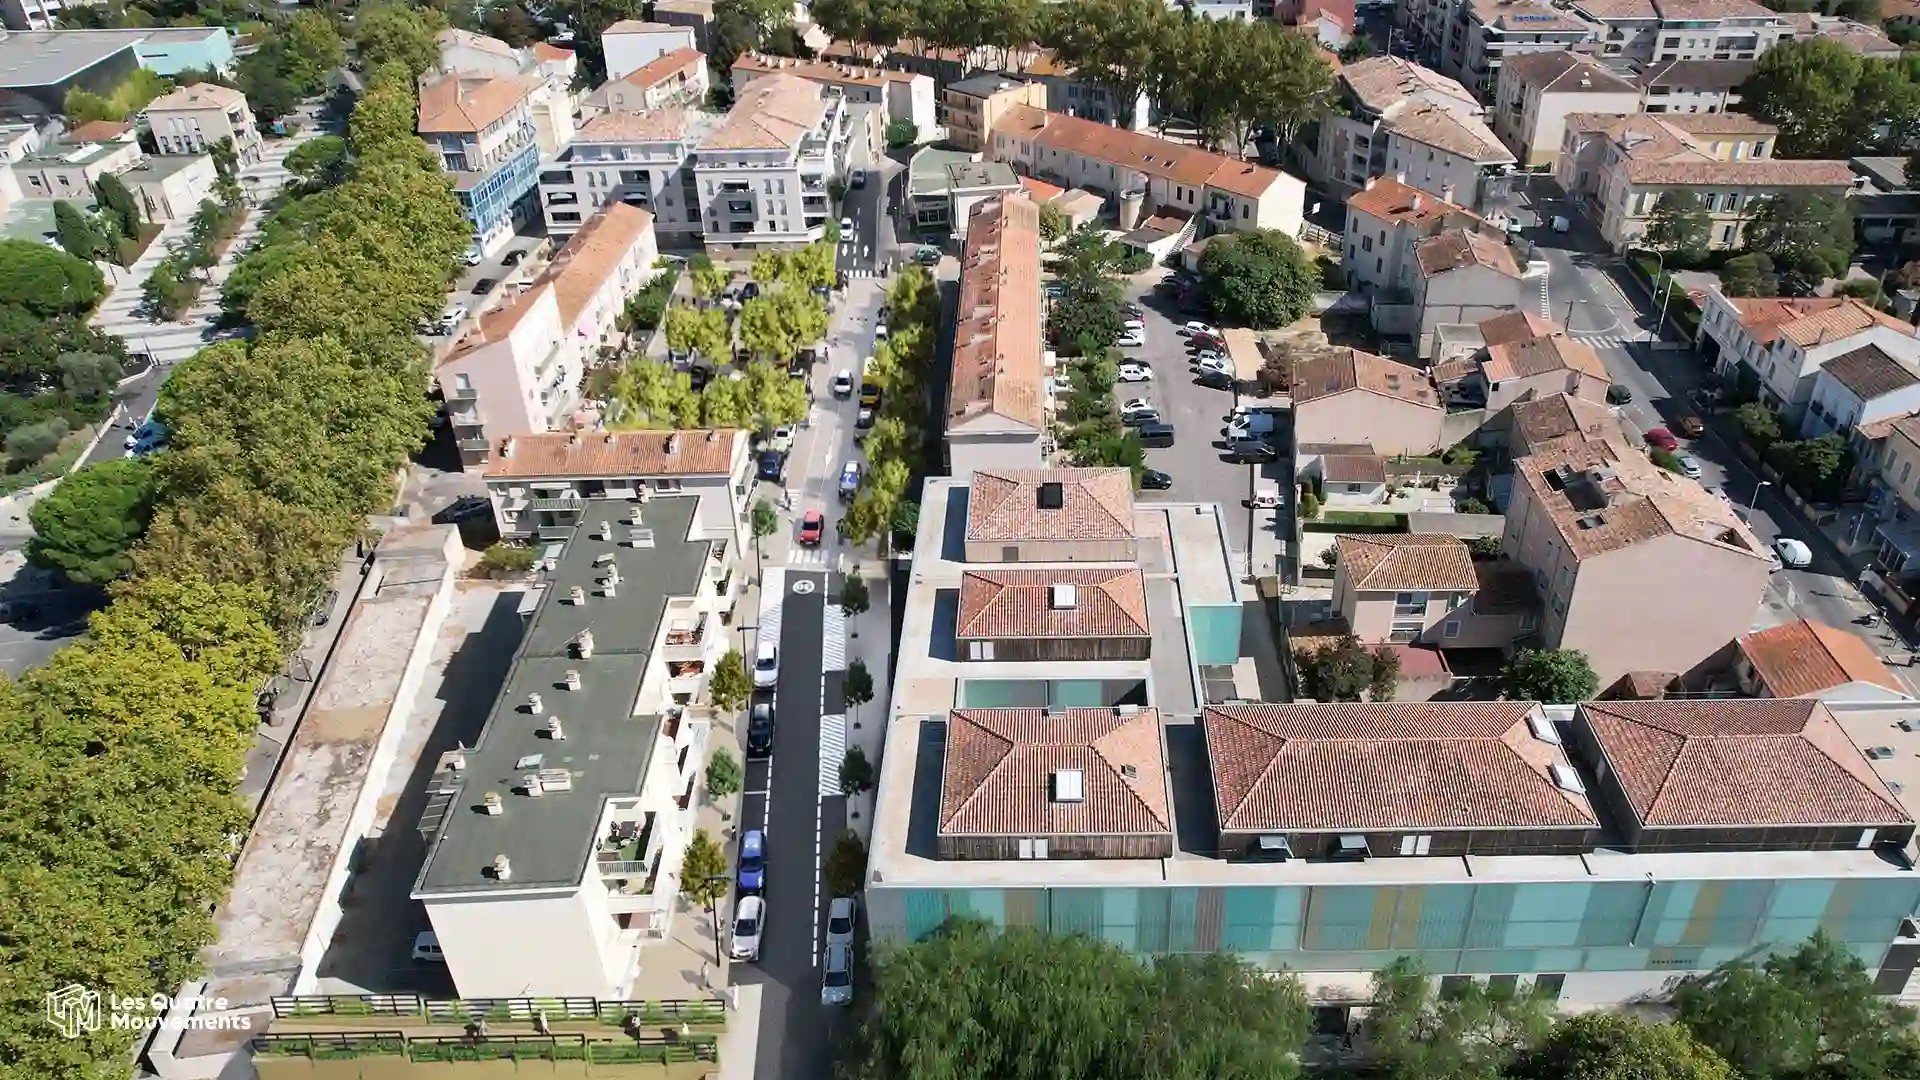 Collectivites-urbanisme-images-3-rendus-perspective-exterieure-studio-L4M-Metropole-Toulon-requalification-avenue-vincent-picareau-insertion-graphique